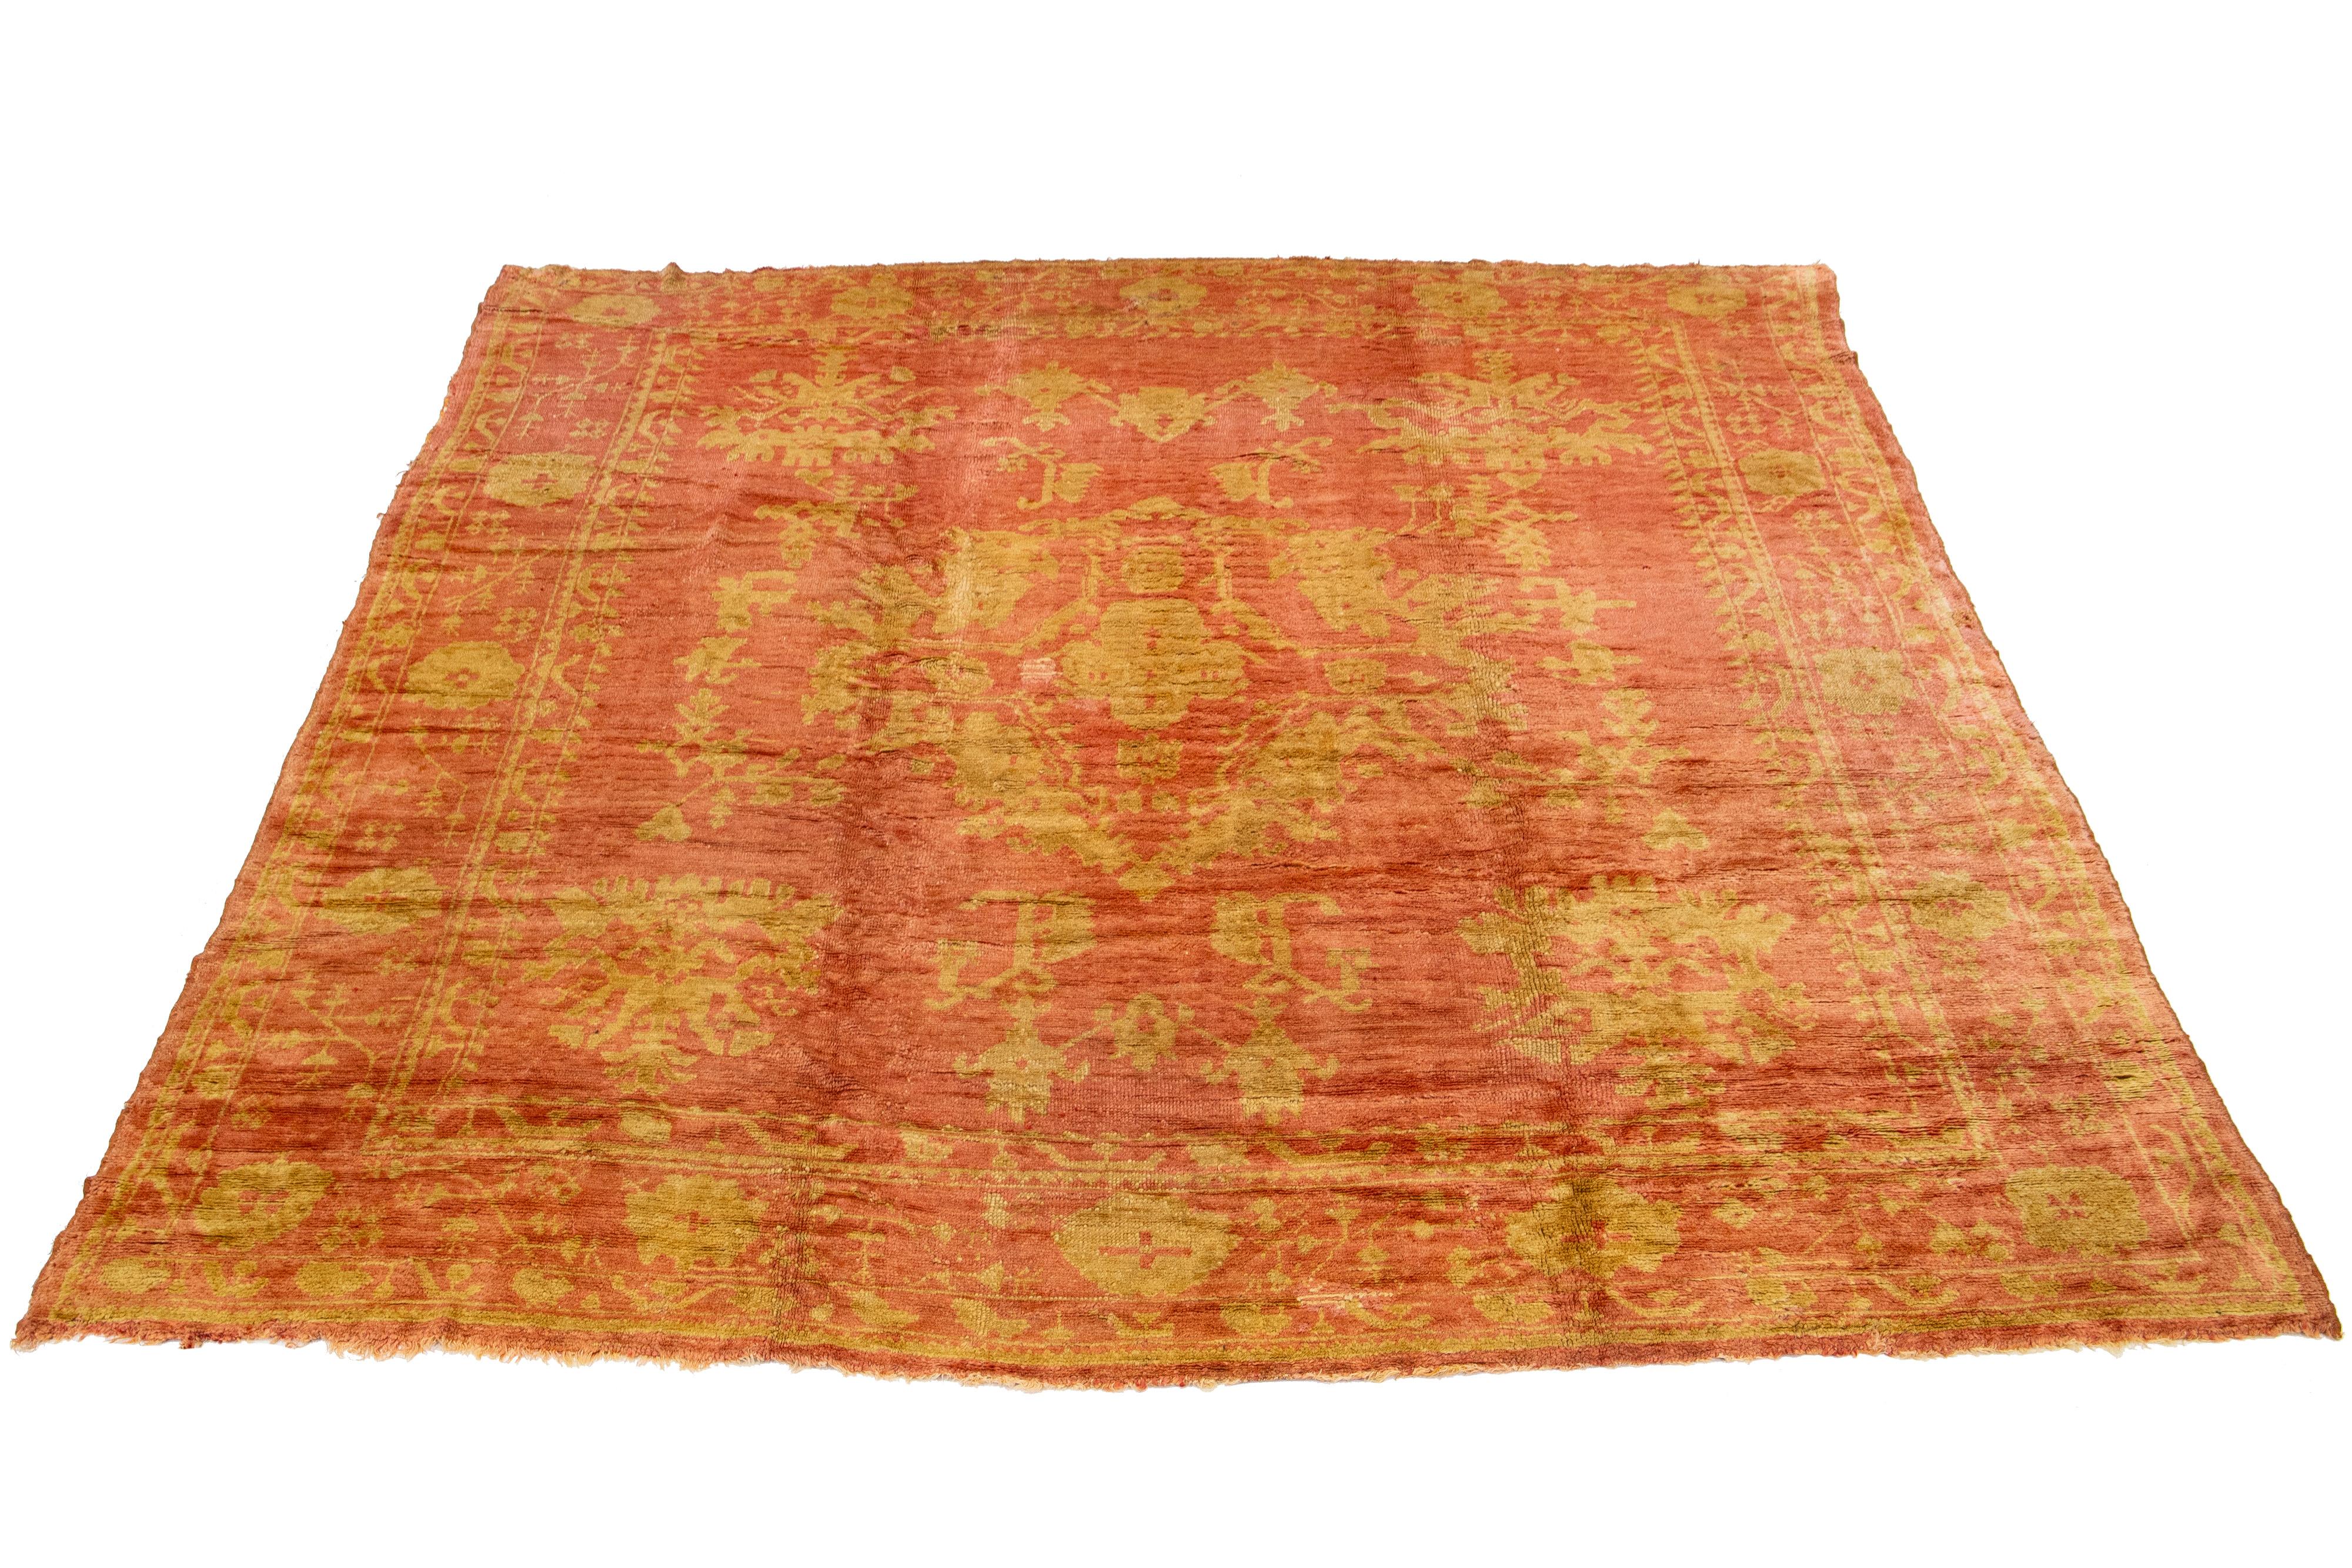 Ce tapis ancien en laine turque du XXe siècle présente une charmante base de couleur terracotta et est noué méticuleusement à la main avec une grande attention aux détails. Il présente des accents tan-dorés étonnants qui affichent un motif floral